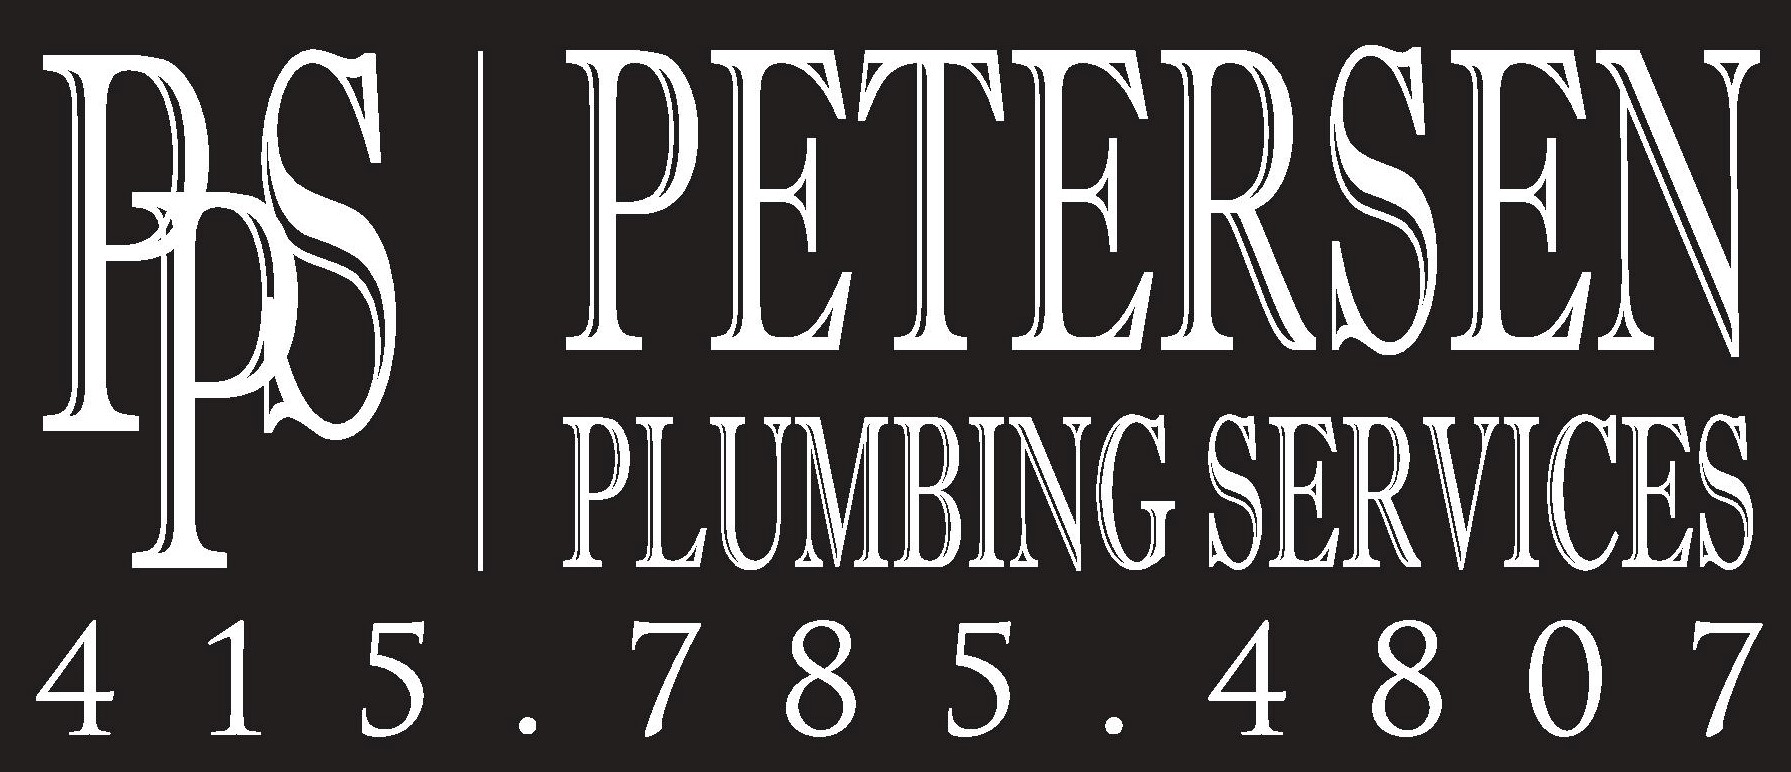 Petersen Plumbing Services